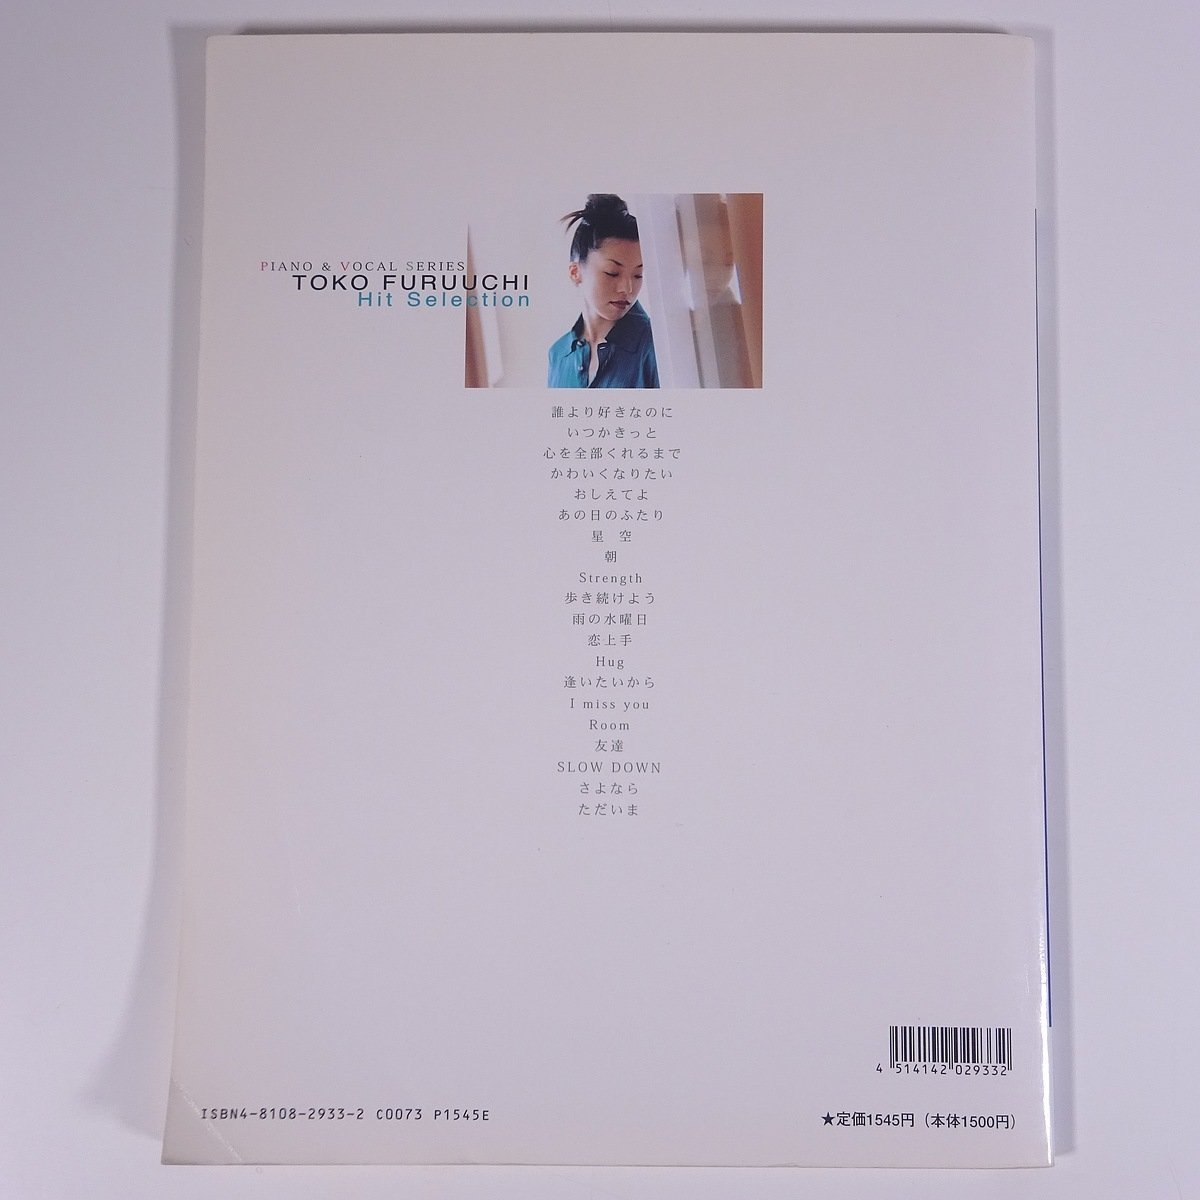 【楽譜】 古内東子 ヒット・セレクション DOREMI ドレミ楽譜出版社 1996 大型本 音楽 邦楽 ピアノ_画像2